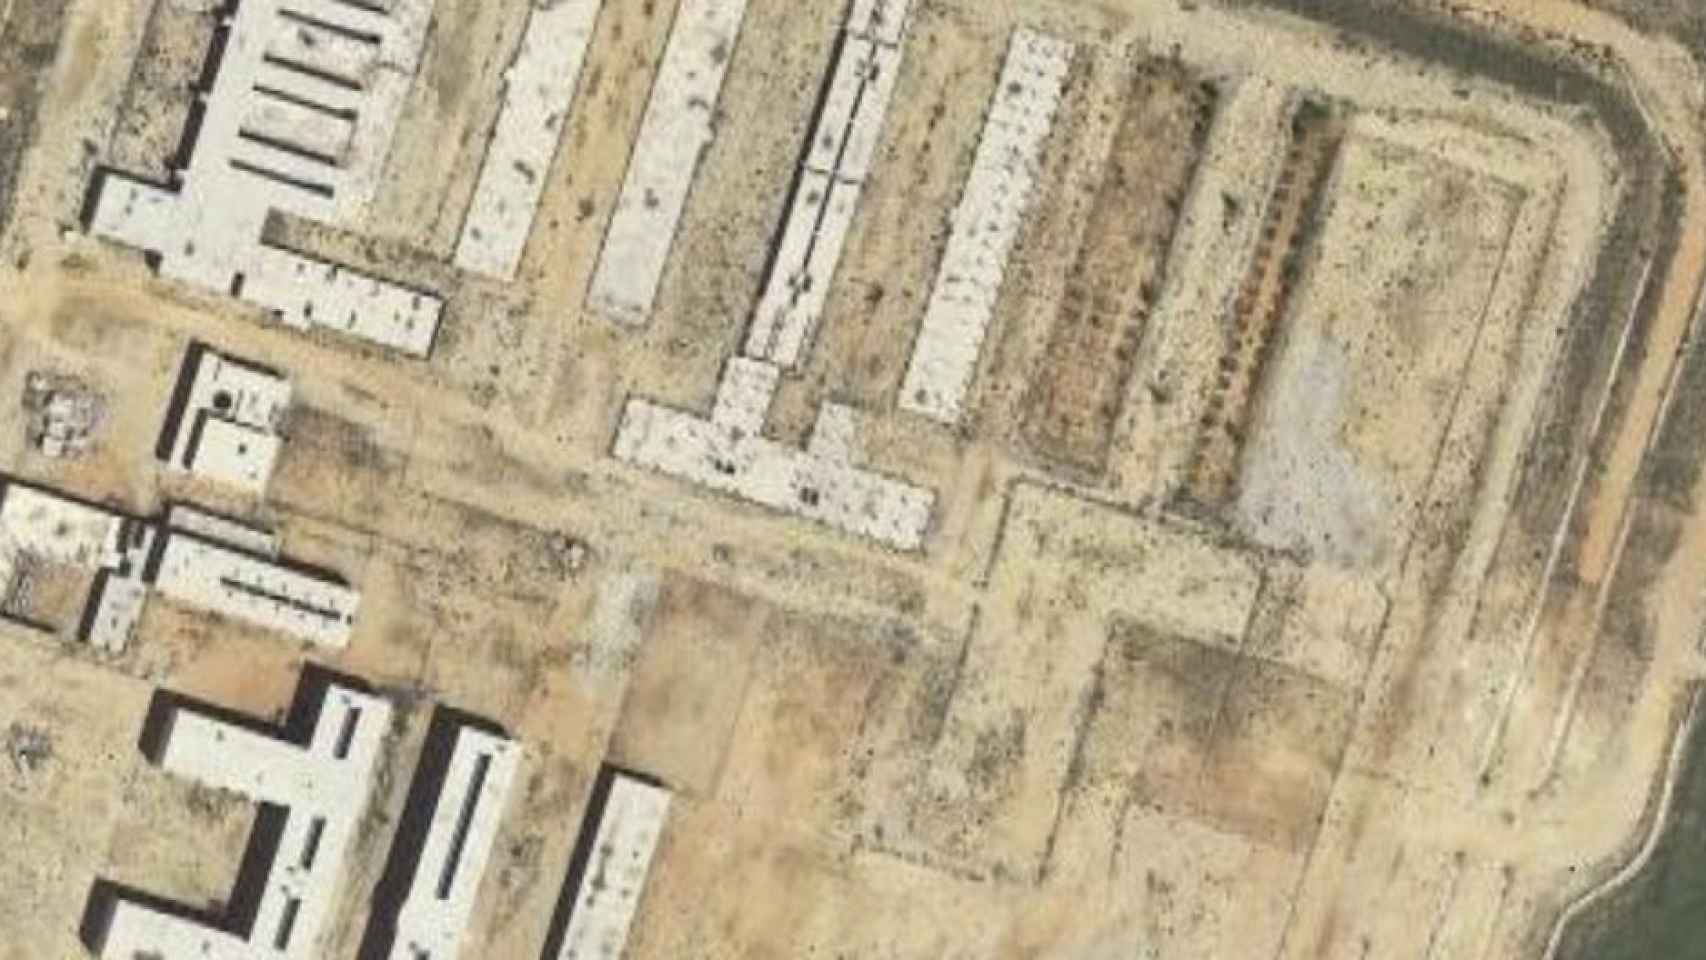 Vista aérea del estado actual de la prisión de Siete Aguas, donde se ubicará el nuevo centro penitenciario psiquiátrico.